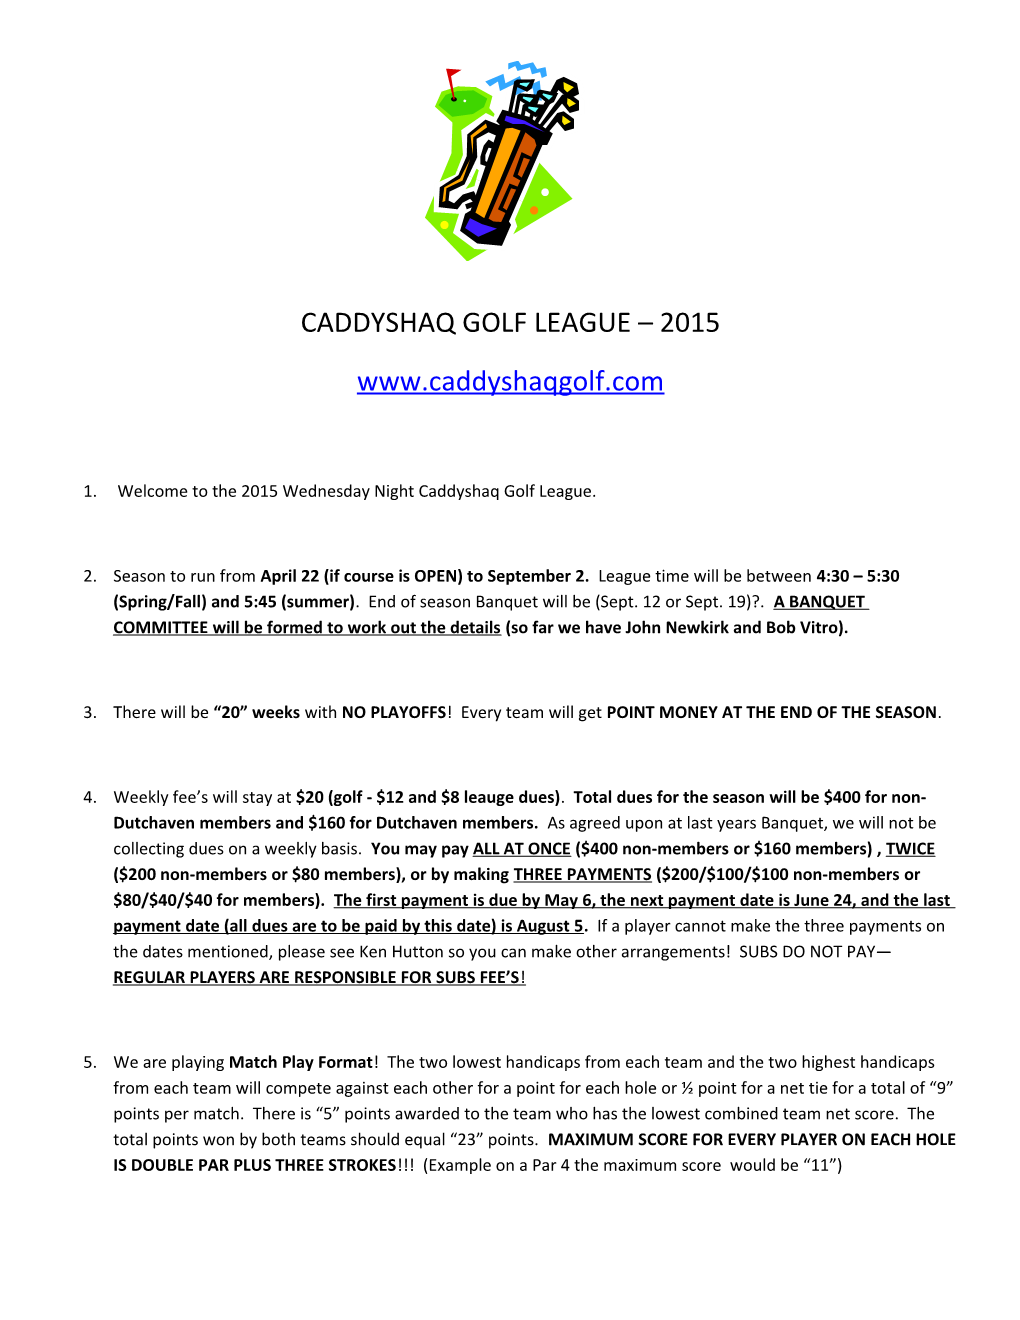 Caddyshaq Golf League 2015